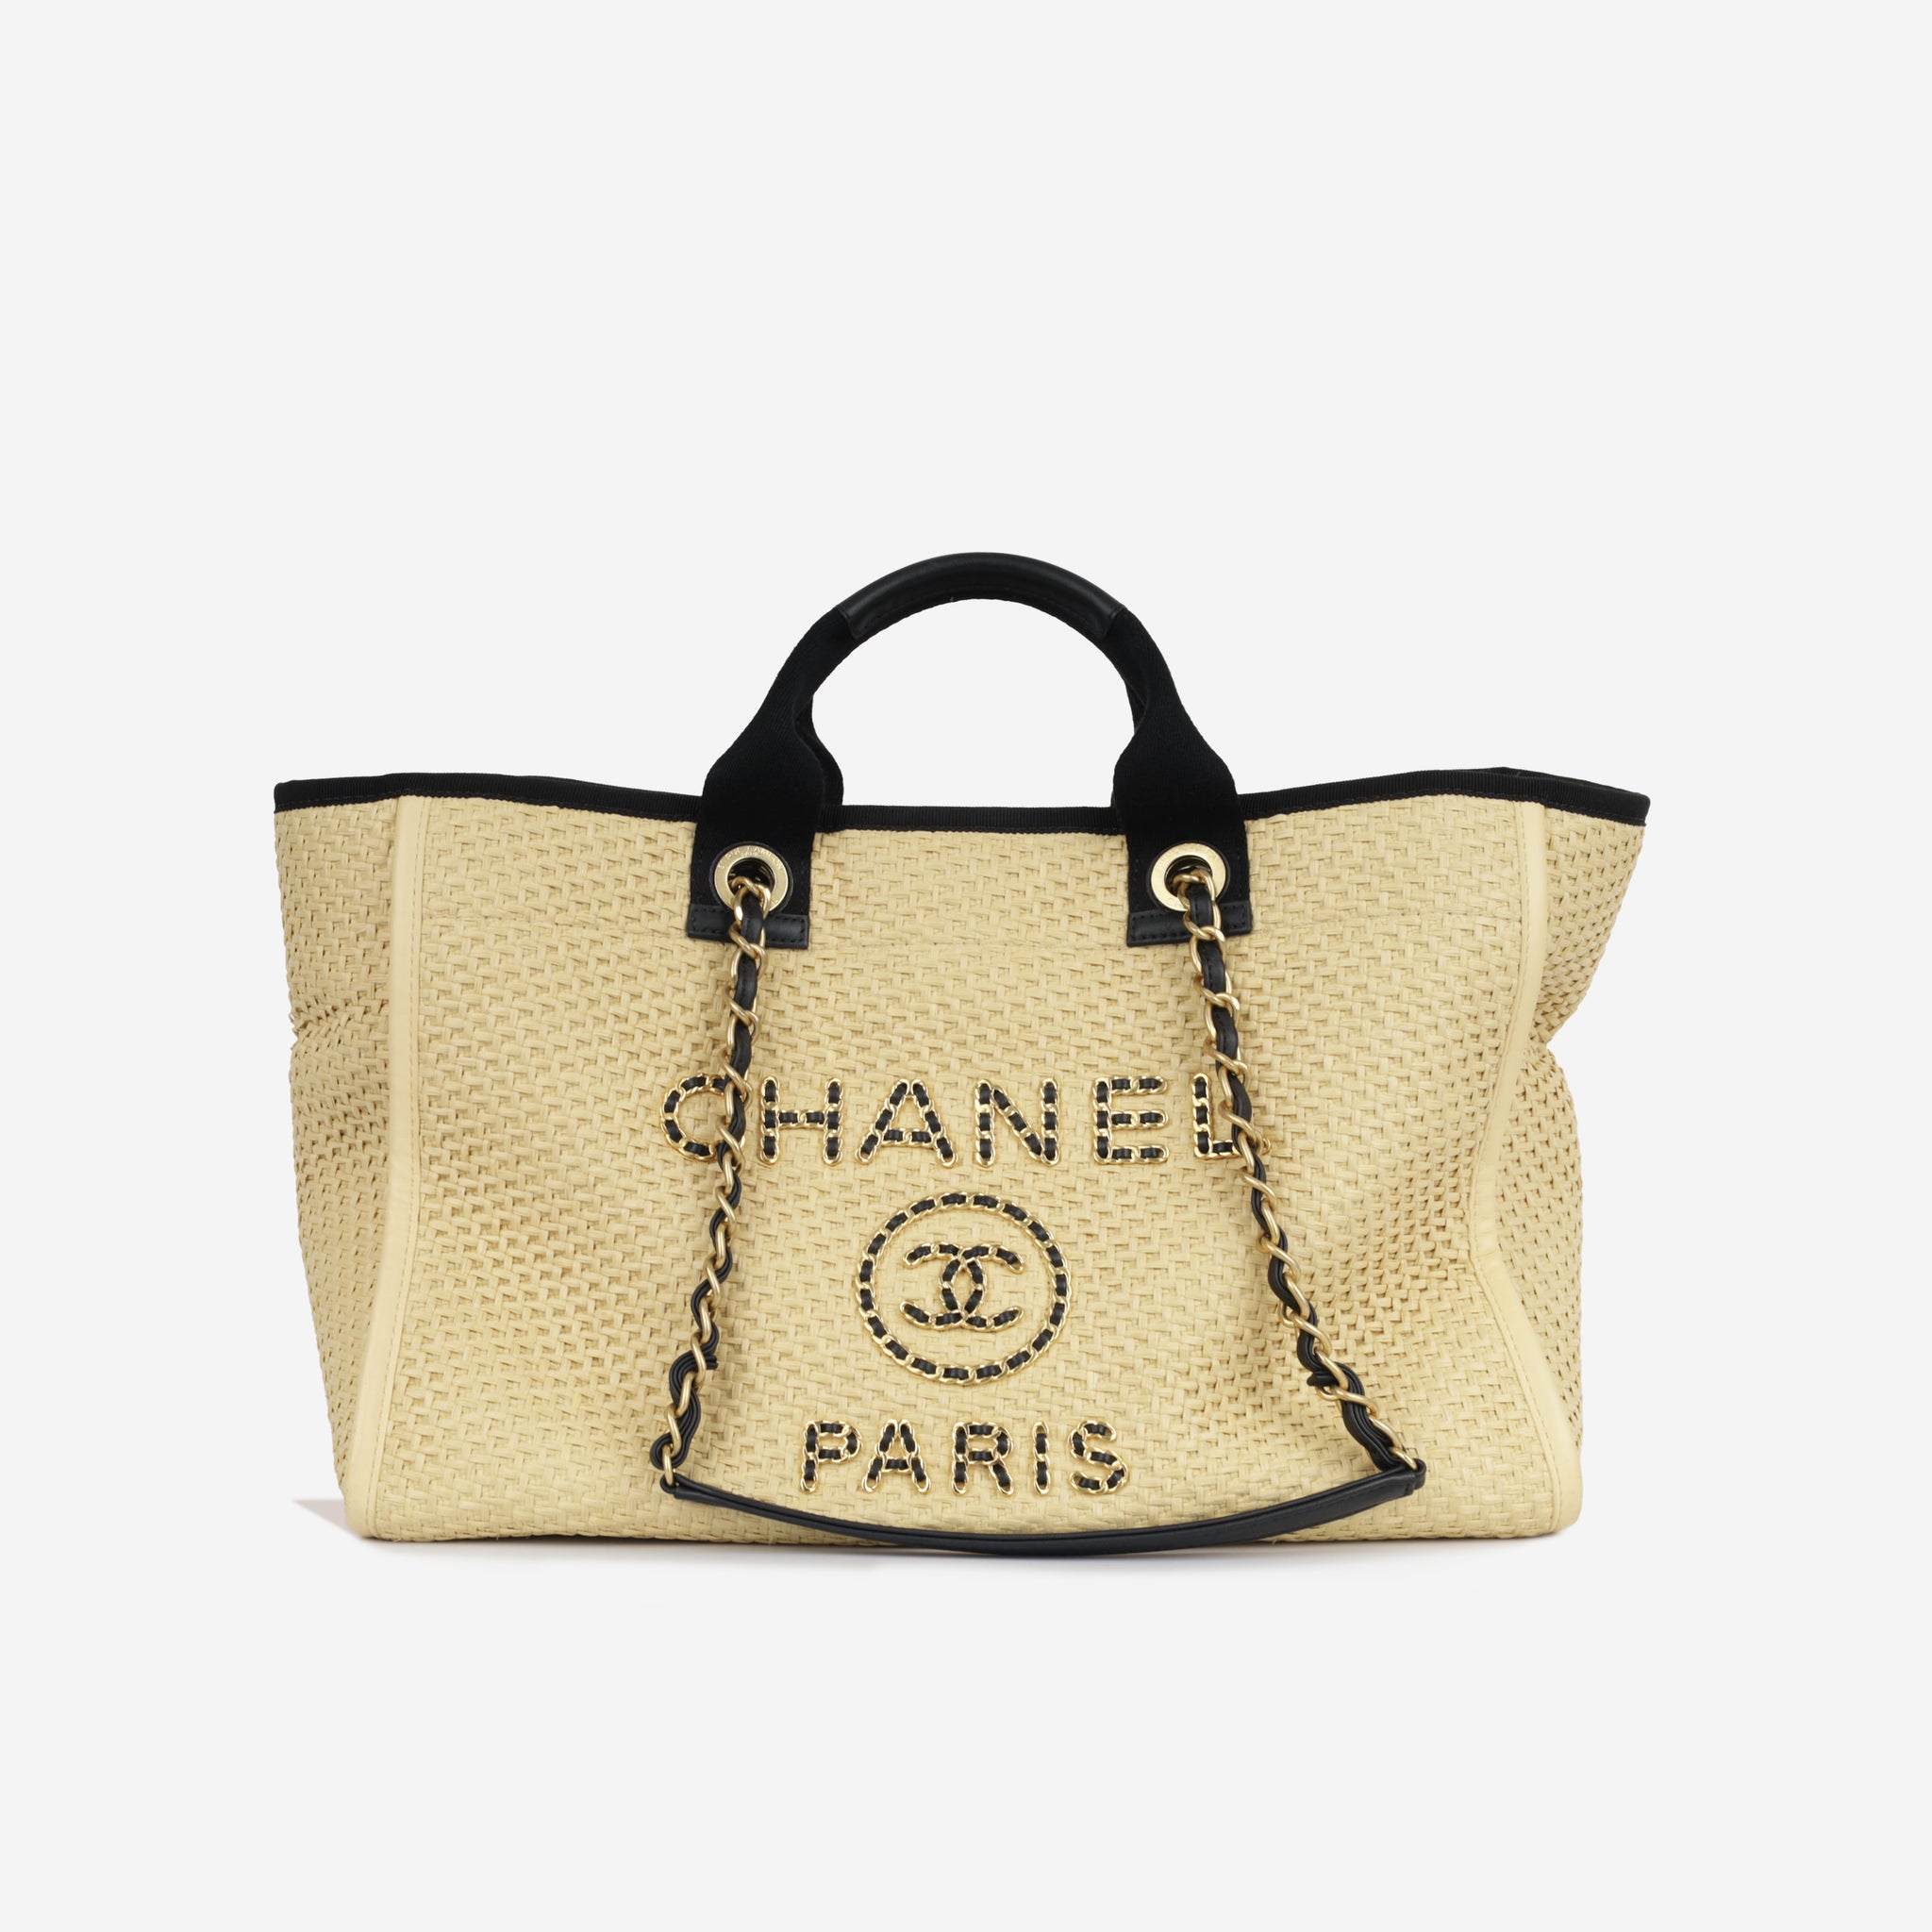 Chanel Deauville Chain Raffia Tote - Yellow Totes, Handbags - CHA797805